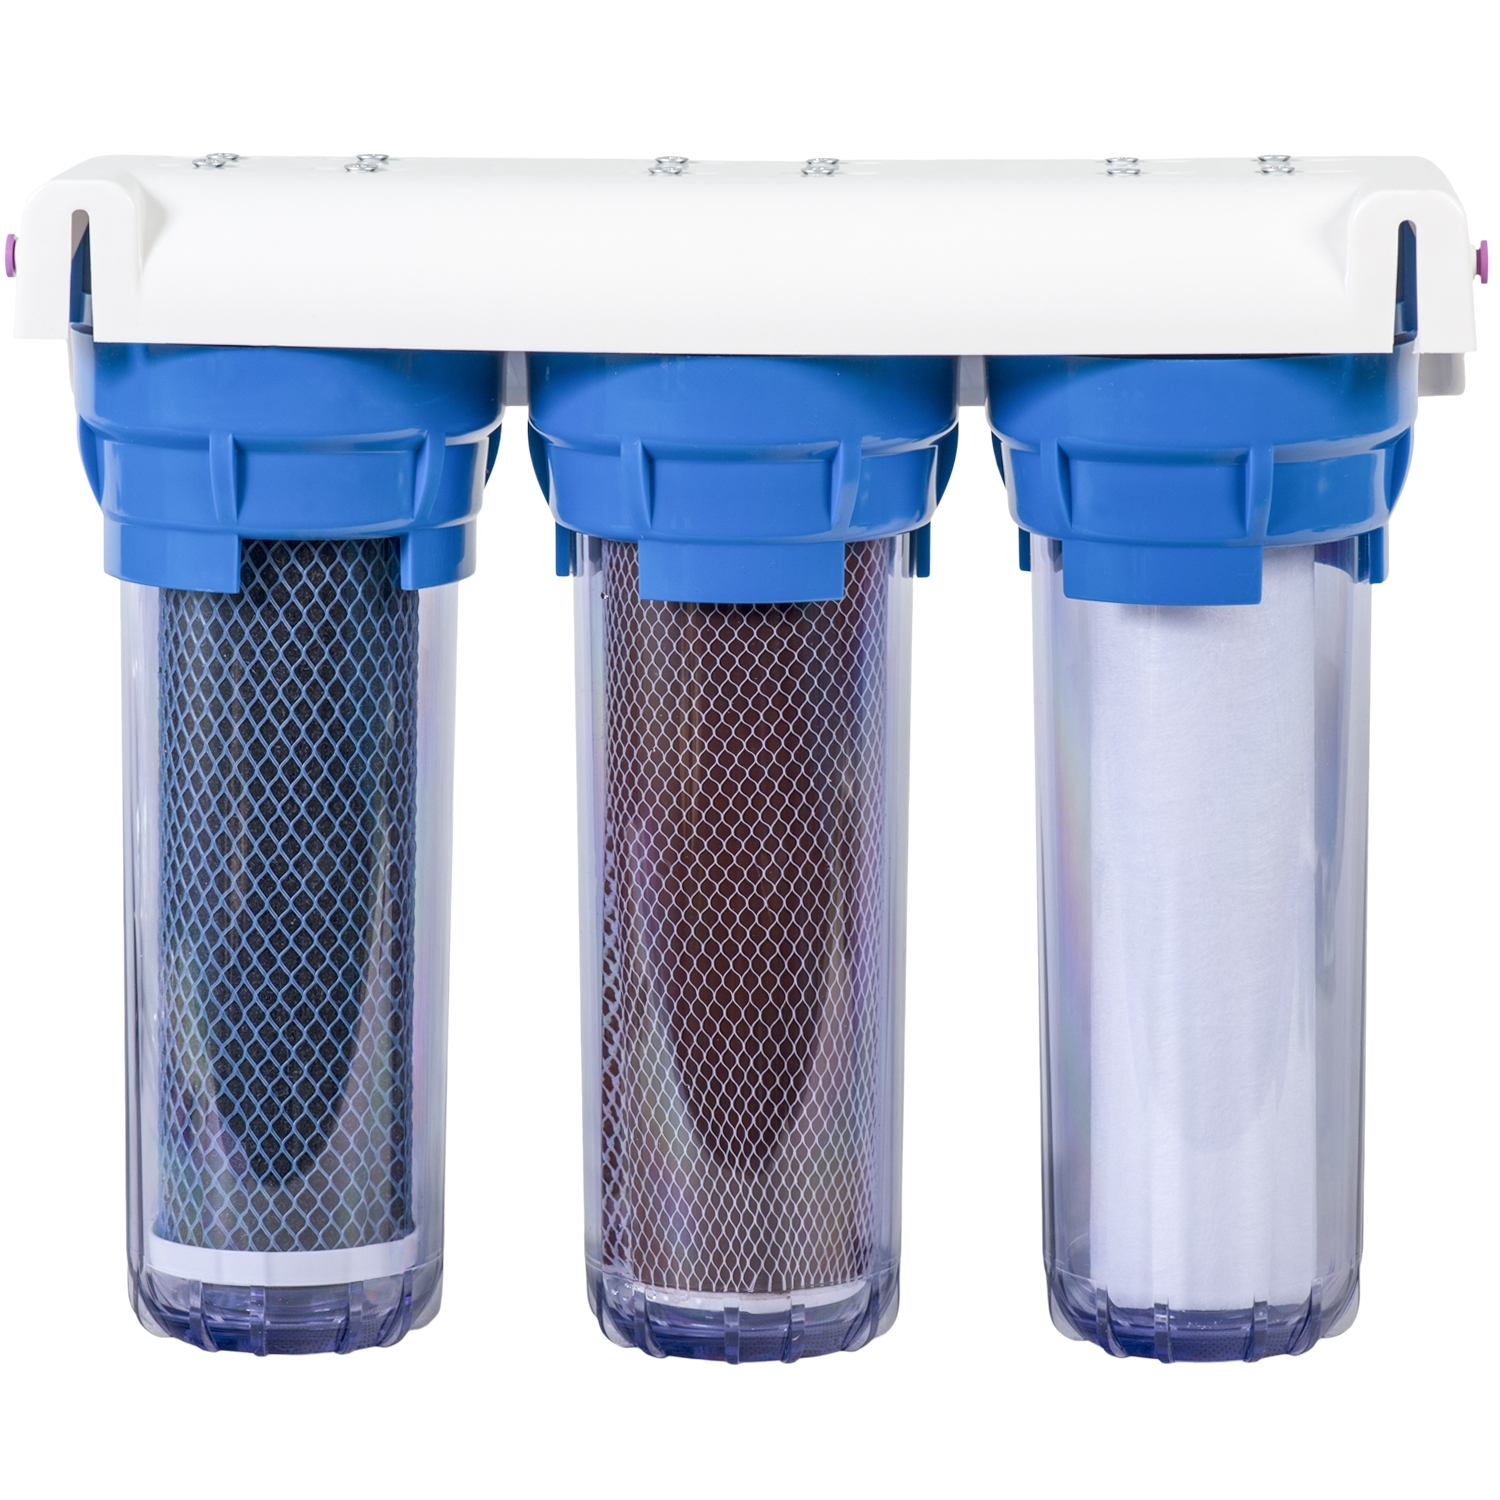 Загрузка фильтров воды. Проточный фильтр для воды АКВАКИТ. Проточный фильтр для воды 1/2 Гейзер. Фильтр для воды проточный магистральный Гейзер. BWT фильтры для воды.